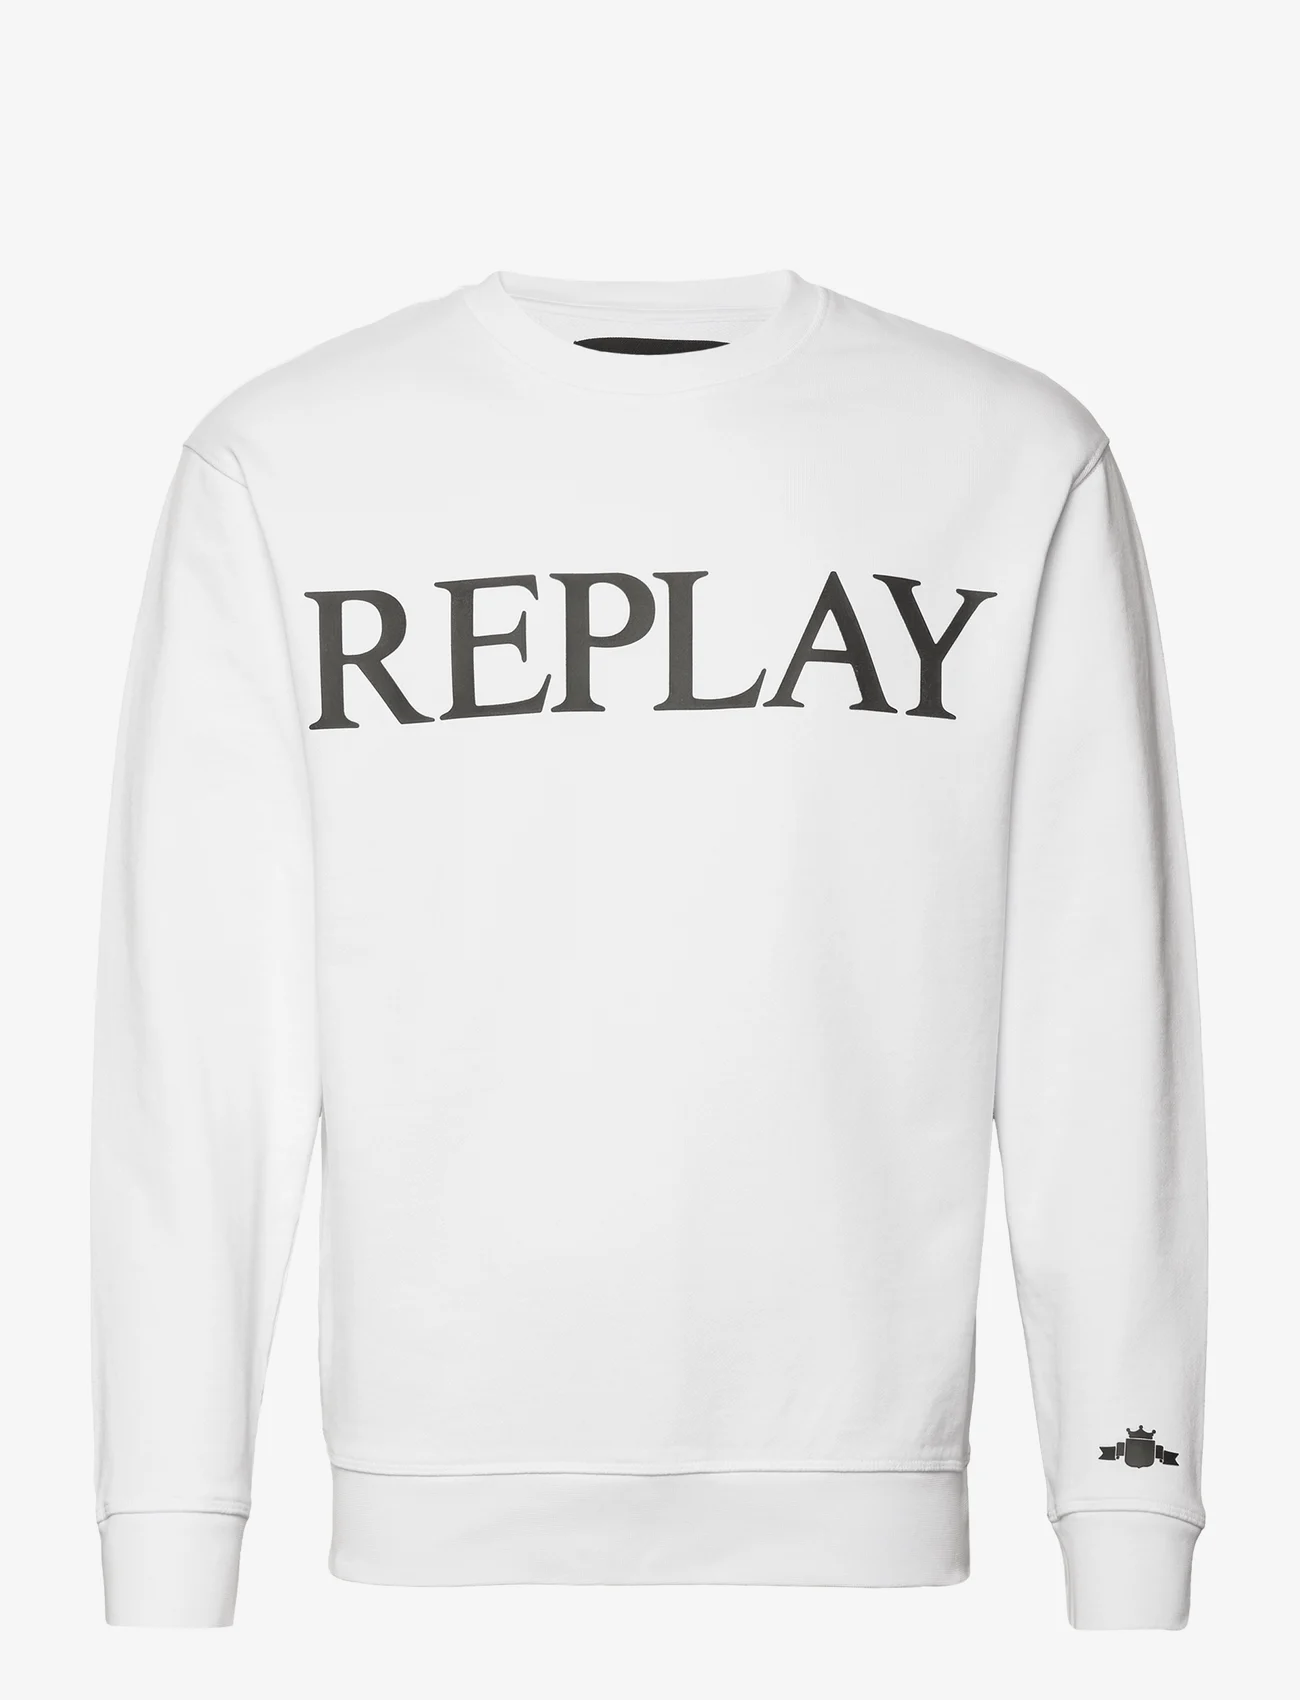 Replay - Sweater REGULAR PURE LOGO - sweatshirts - white - 0